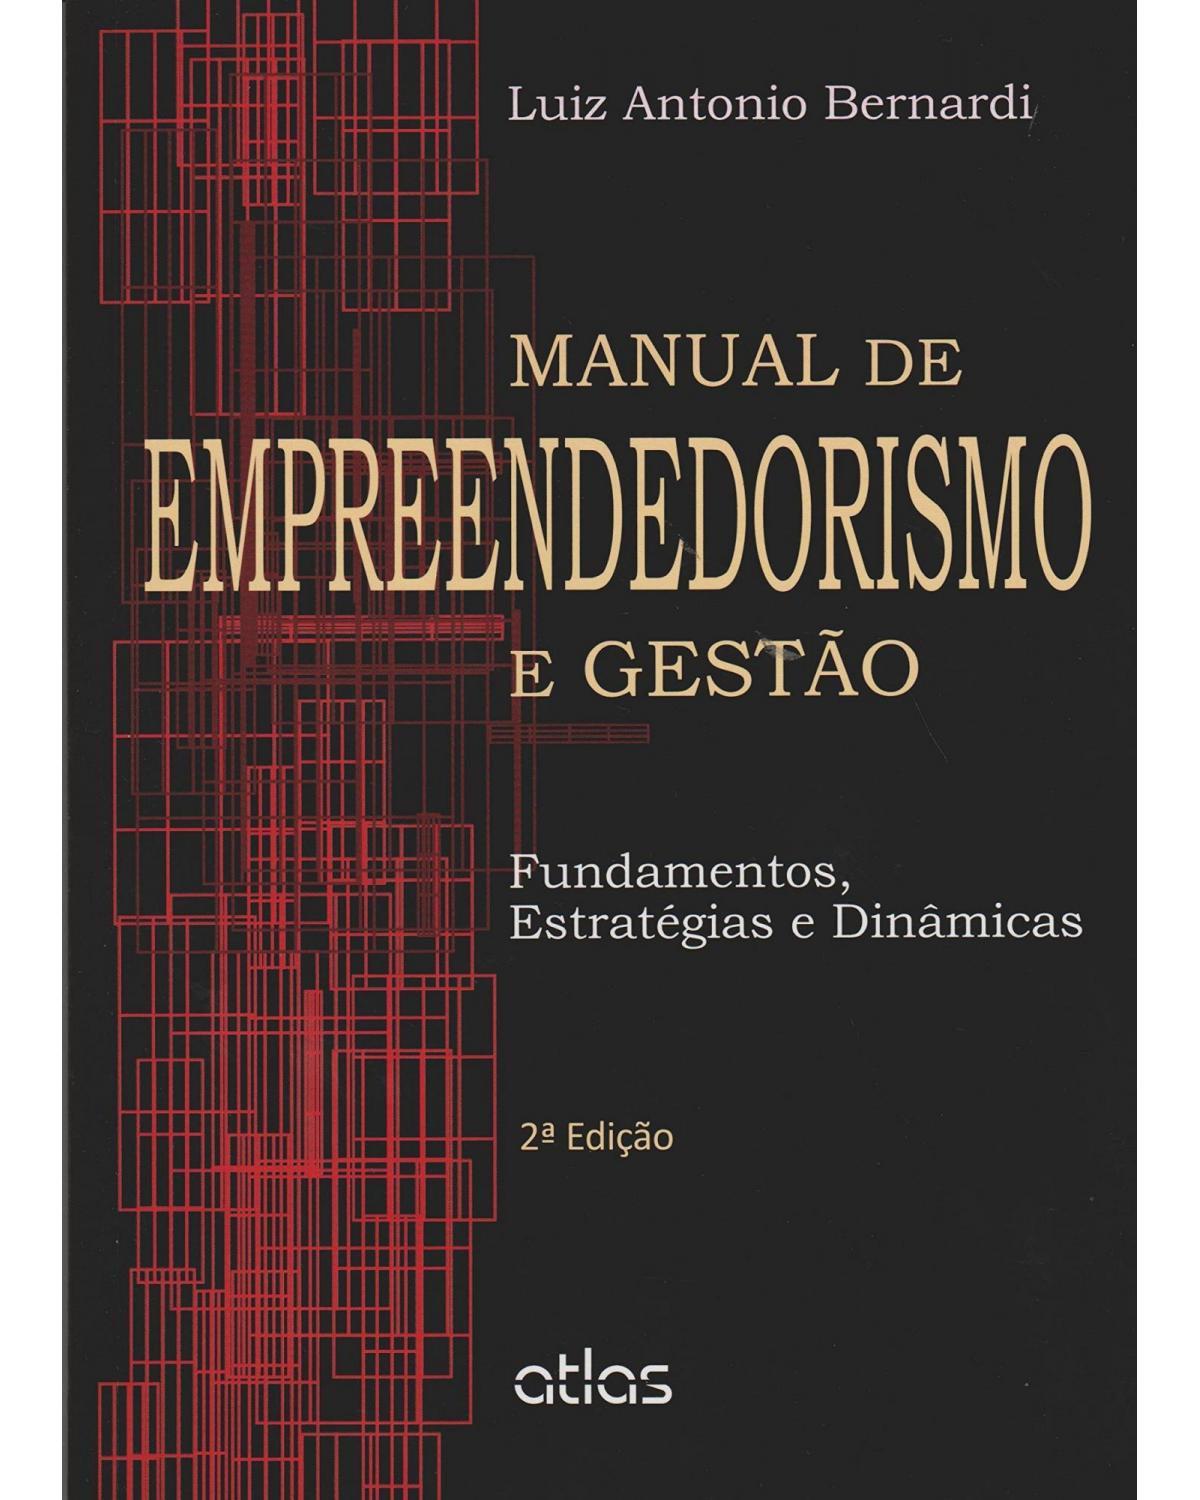 Manual de empreendedorismo e gestão - Fundamentos, estratégias e dinâmicas - 2ª Edição | 2012